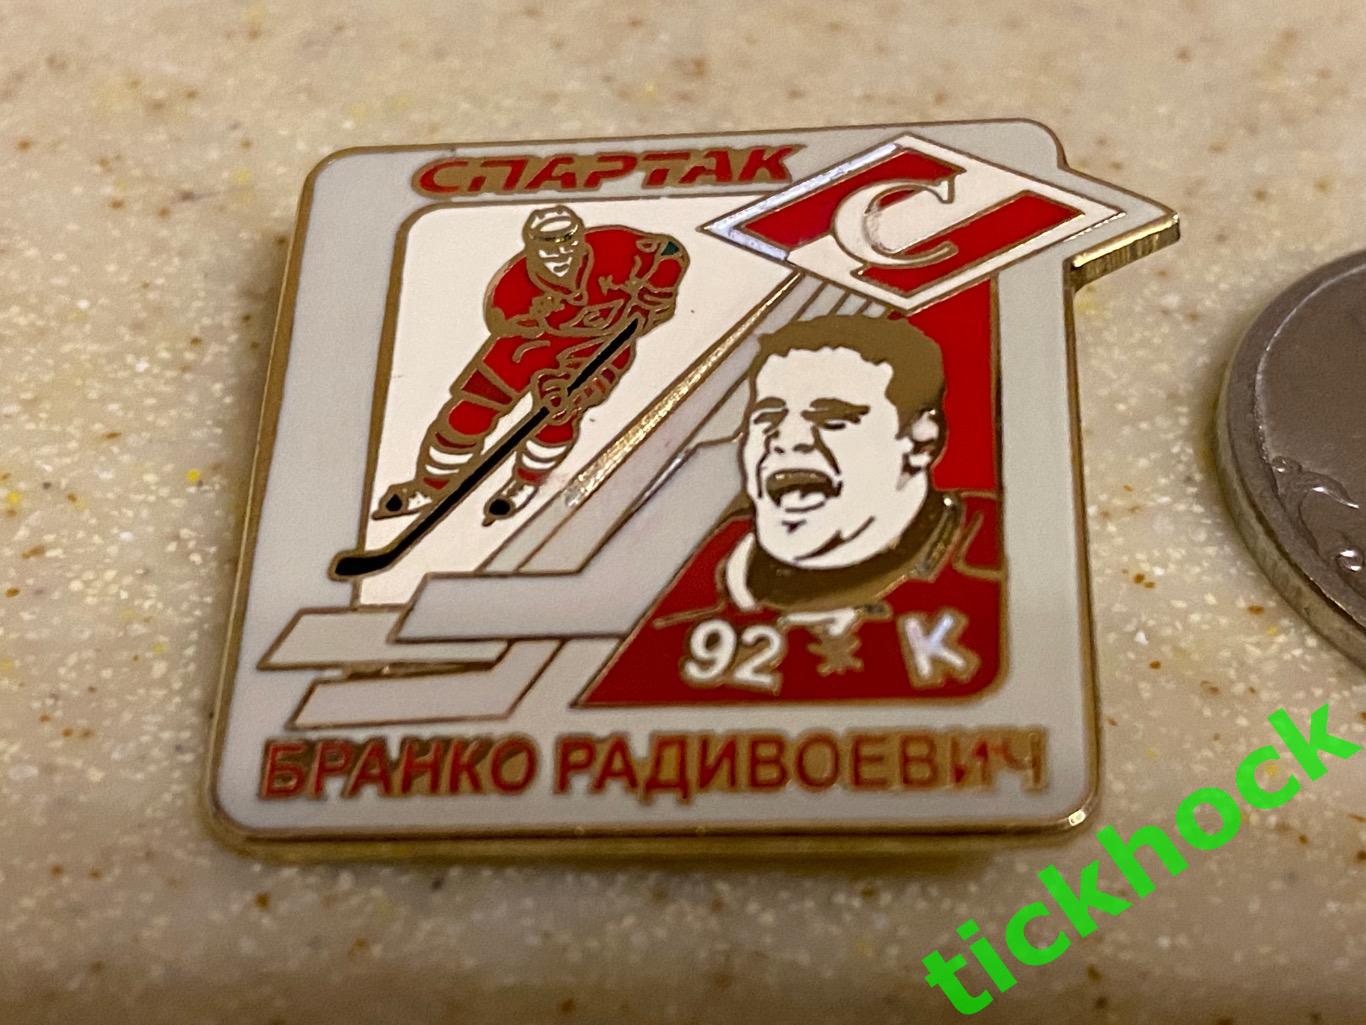 СПАРТАК Москва -Бранко РАДИВОЕВИЧ - хоккей